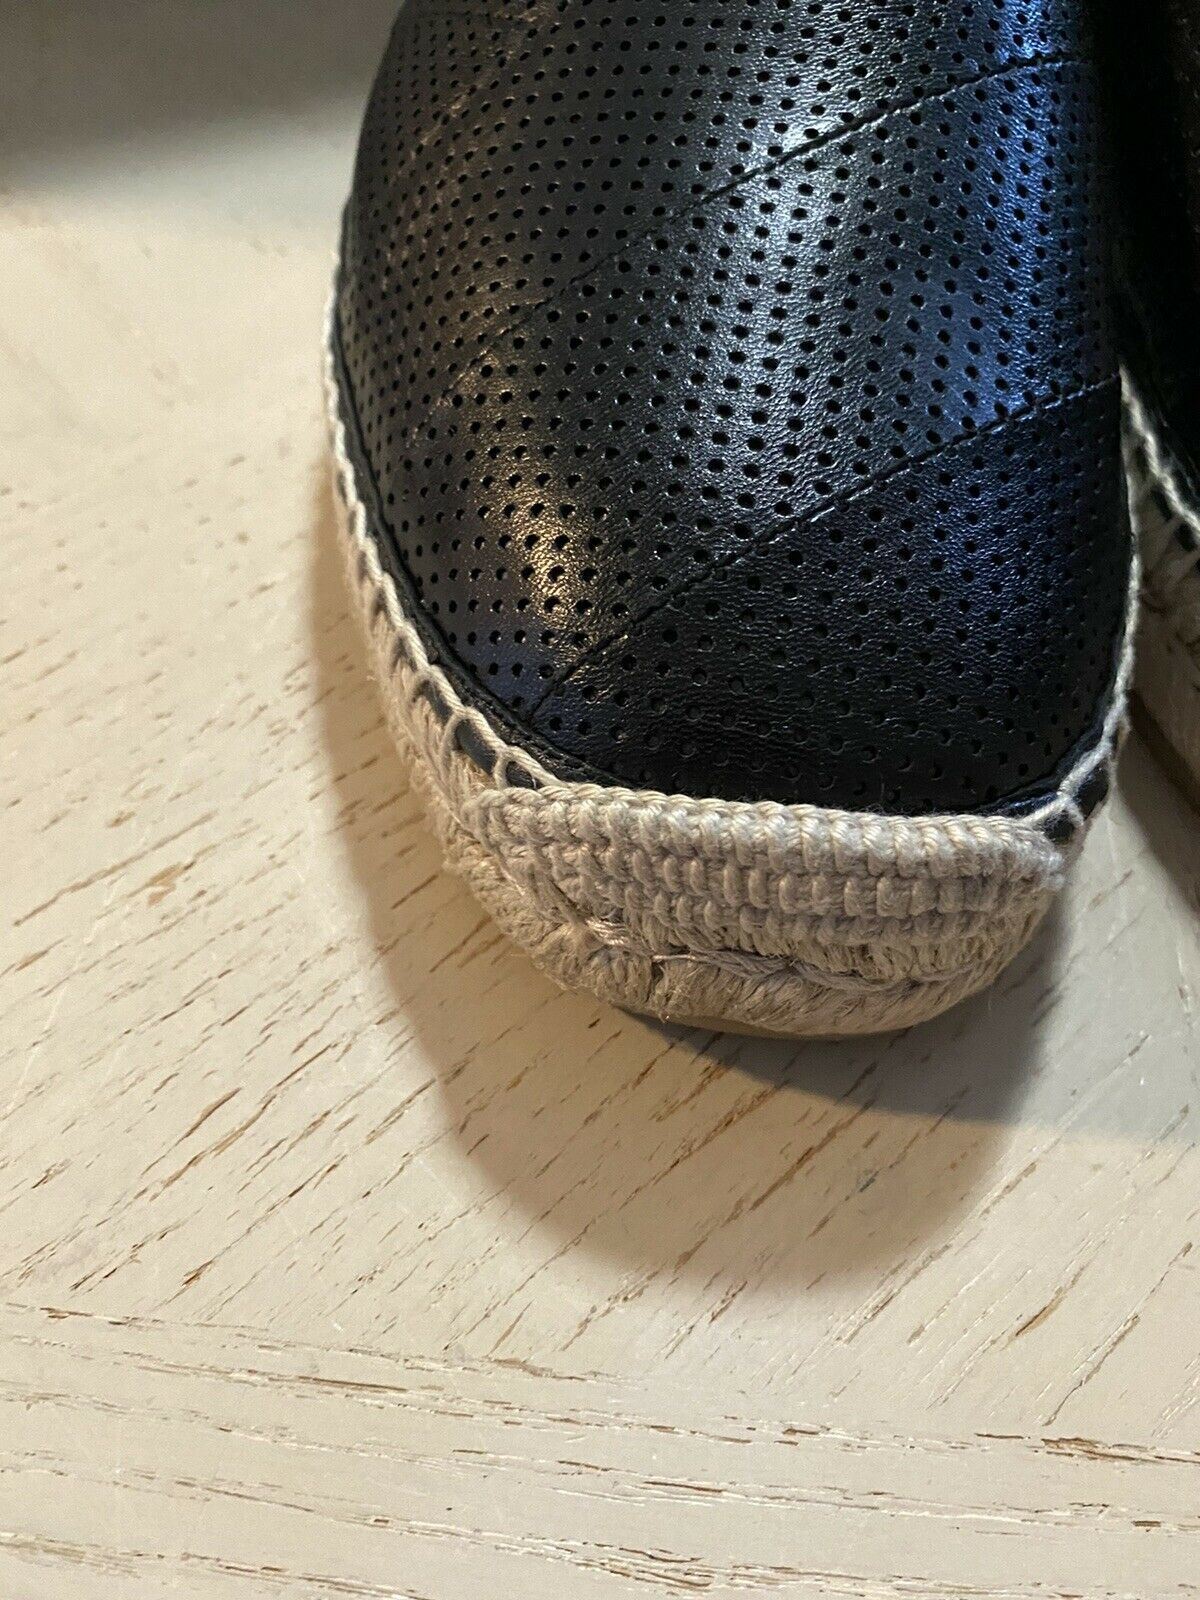 Neue Gucci Herren-Espadrille-Schuhe aus Leder, Schwarz, 8 US/7 UK